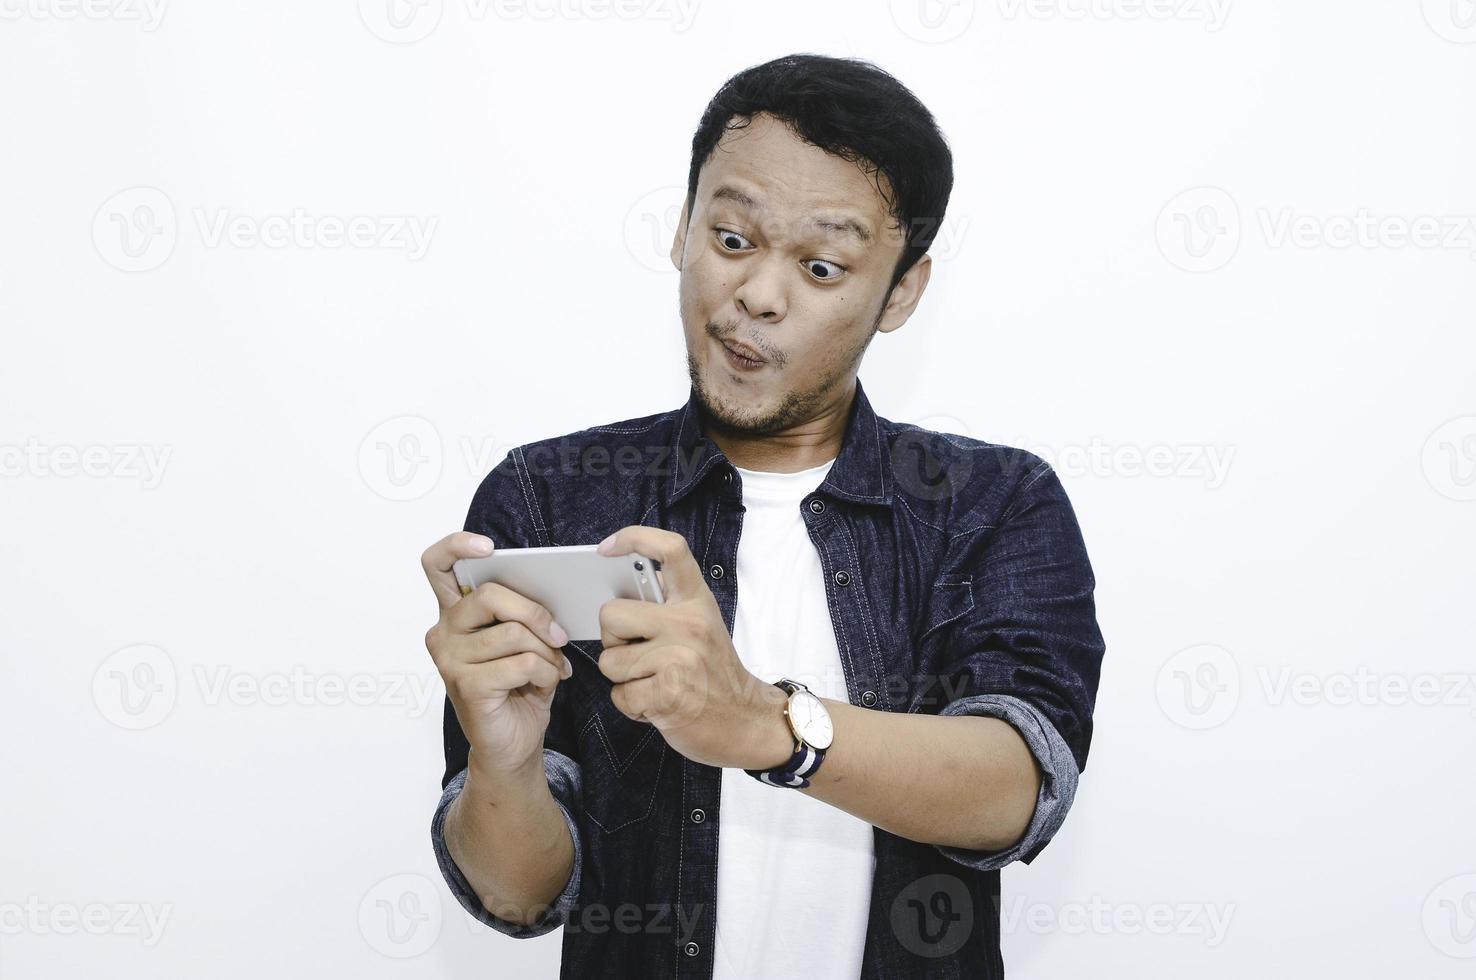 wow faccia del giovane asiatico scioccato e sorpreso quando gioca sullo smartphone. foto